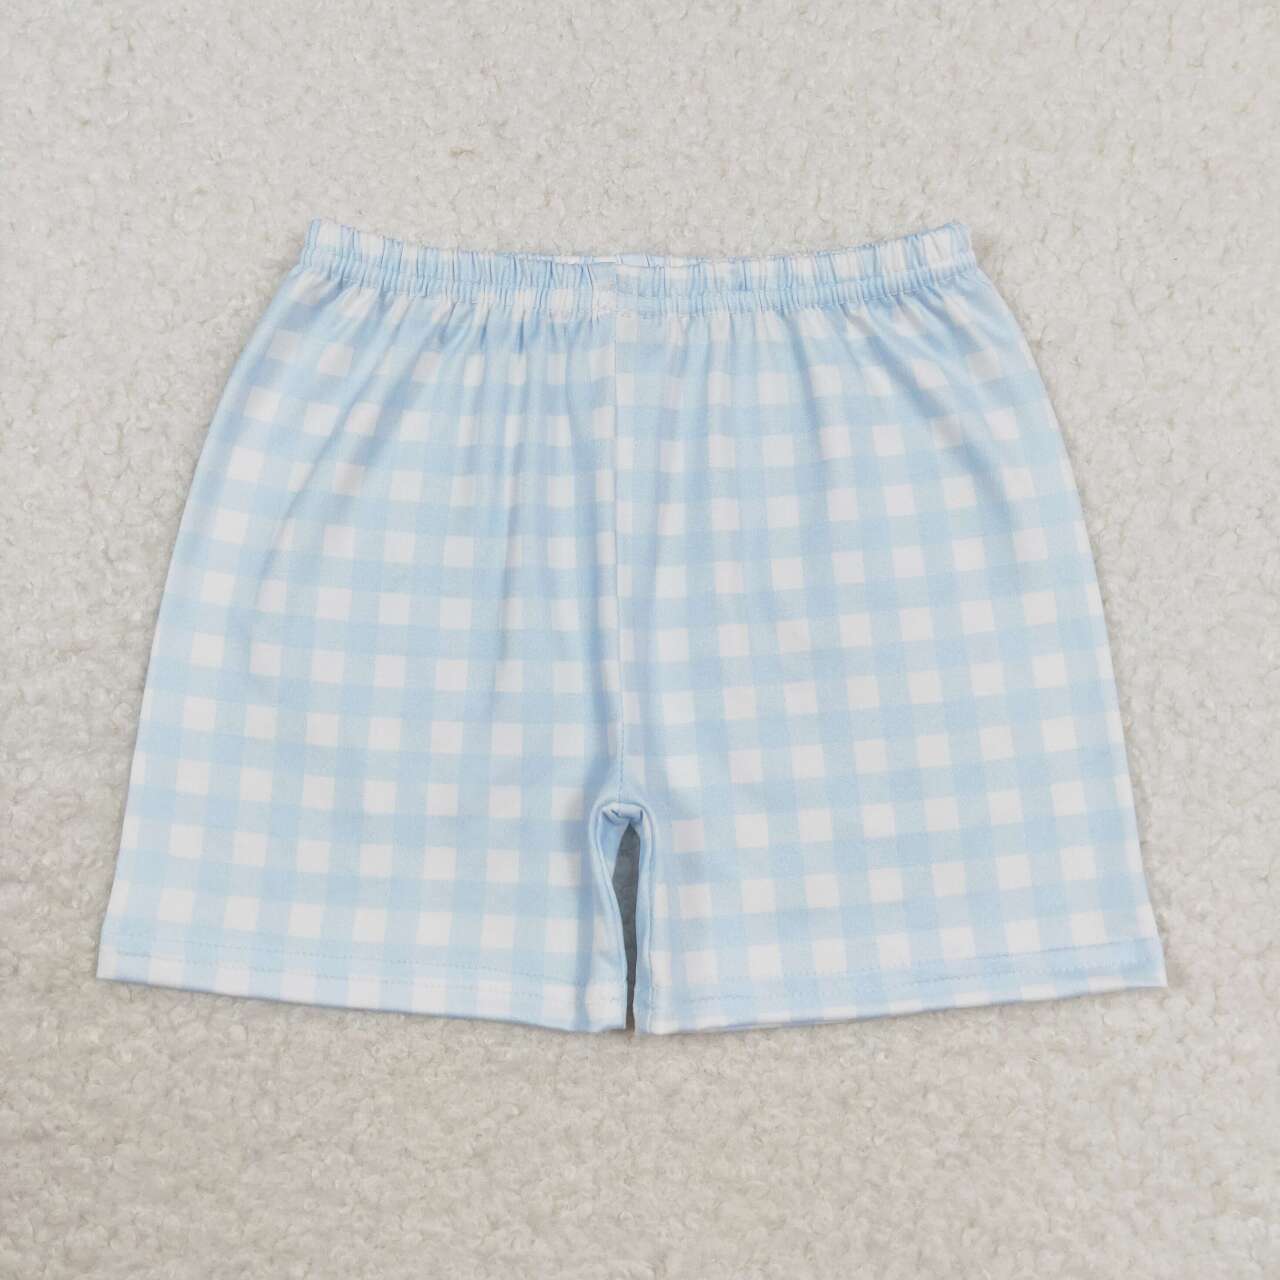 SS0353 Boys blue plaid shorts